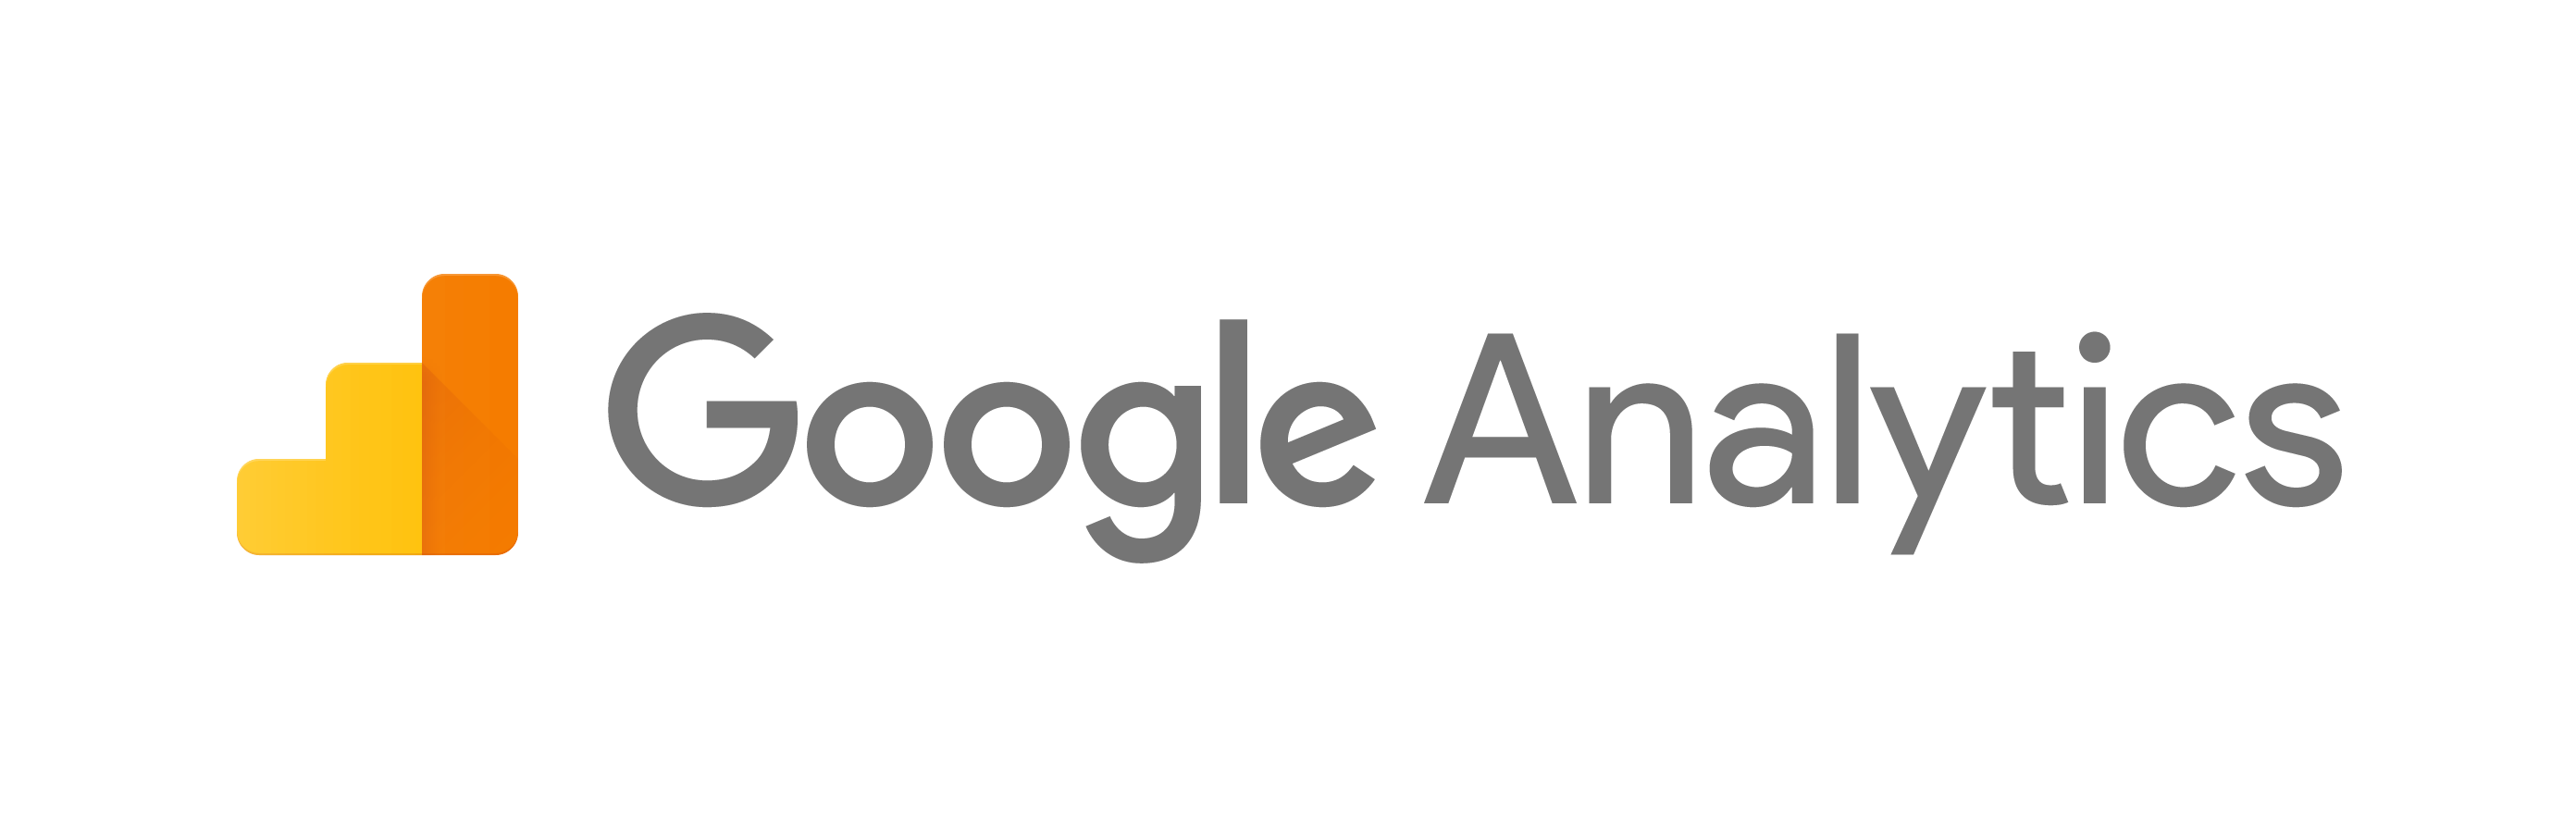 Google アナリティクス開発者向けのブランディングに関するガイドラインとポリシー | Google Developers